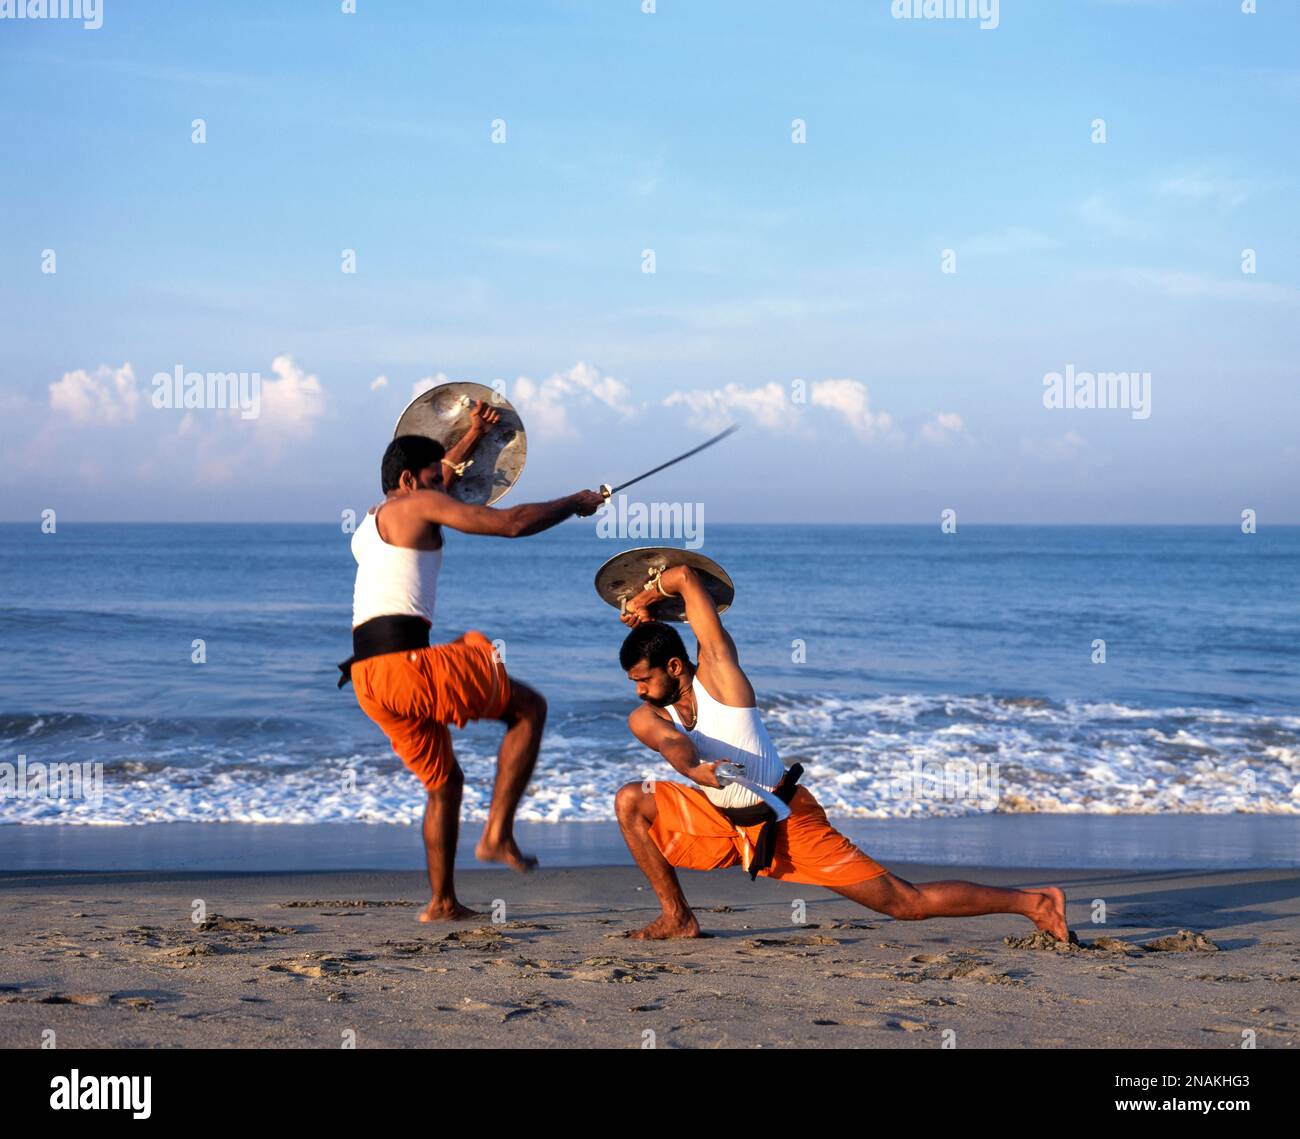 Kalaripayattu Ancient Martial Art ok Kerala, Sword & Shield Fight Stock Photo